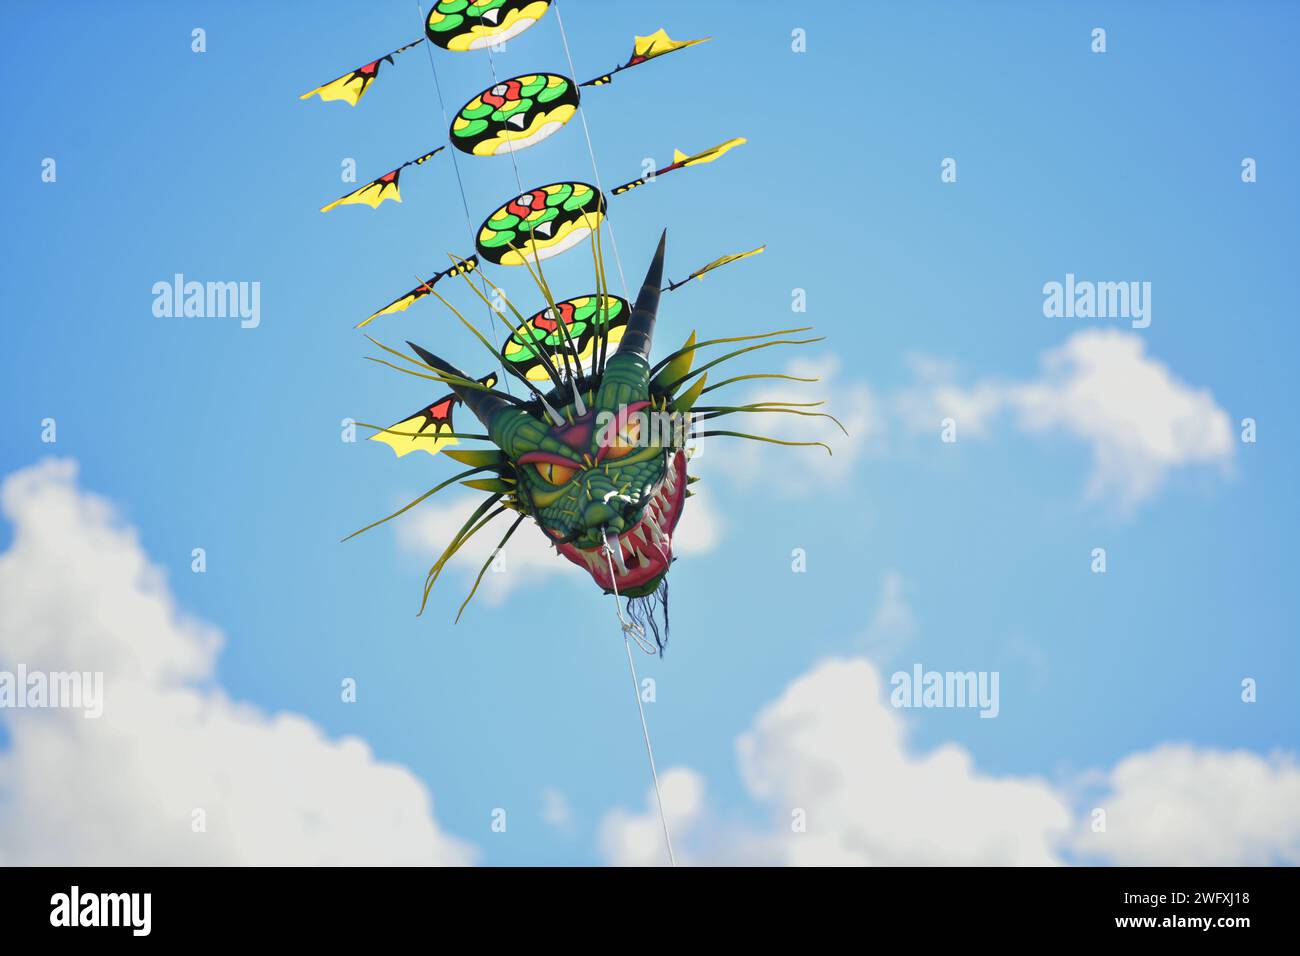 Dragon kite in the sky Stock Photo